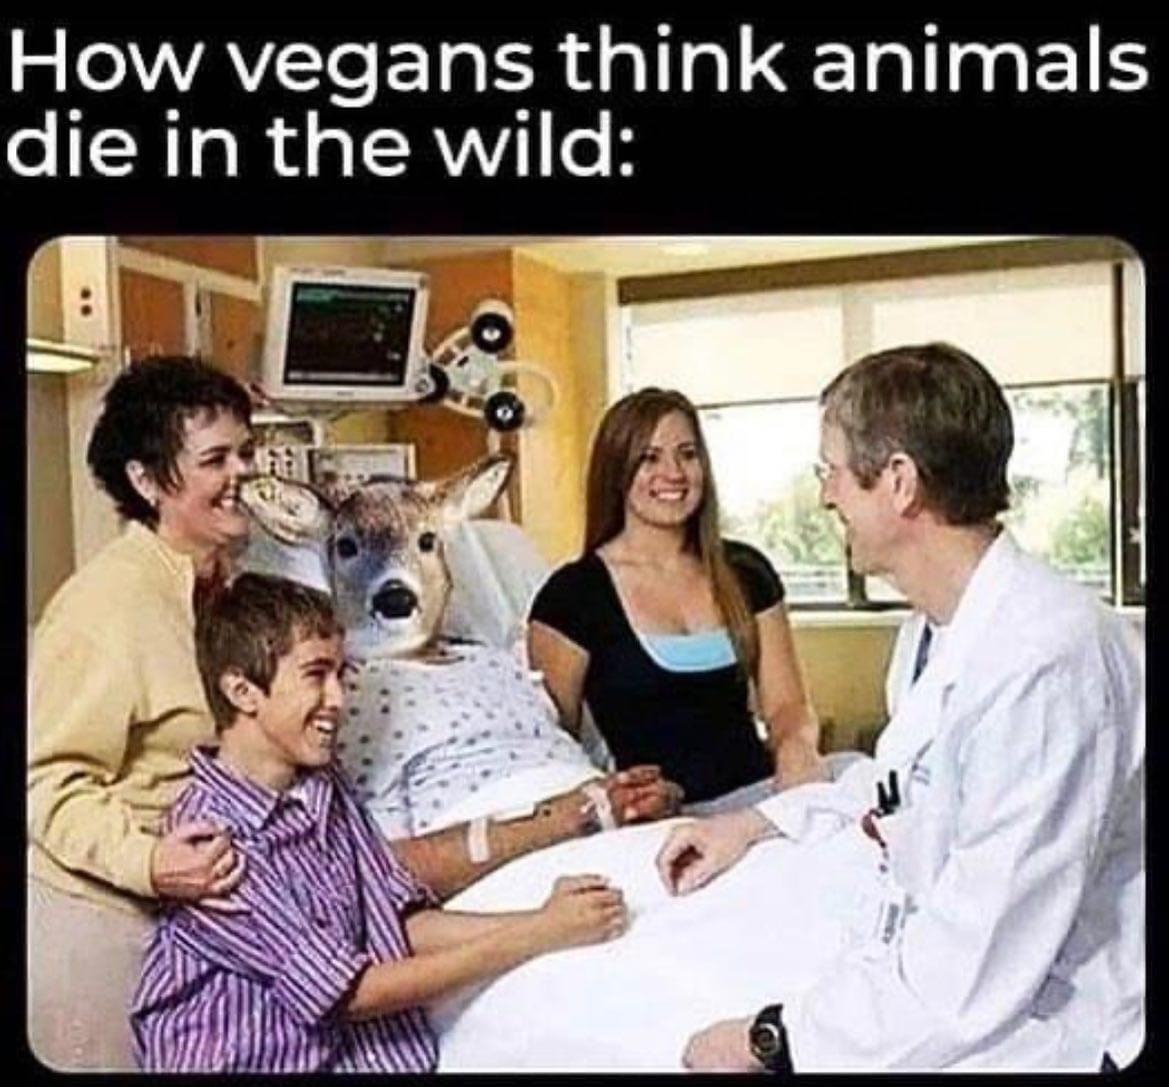 Obrázek The vegan viewpoint